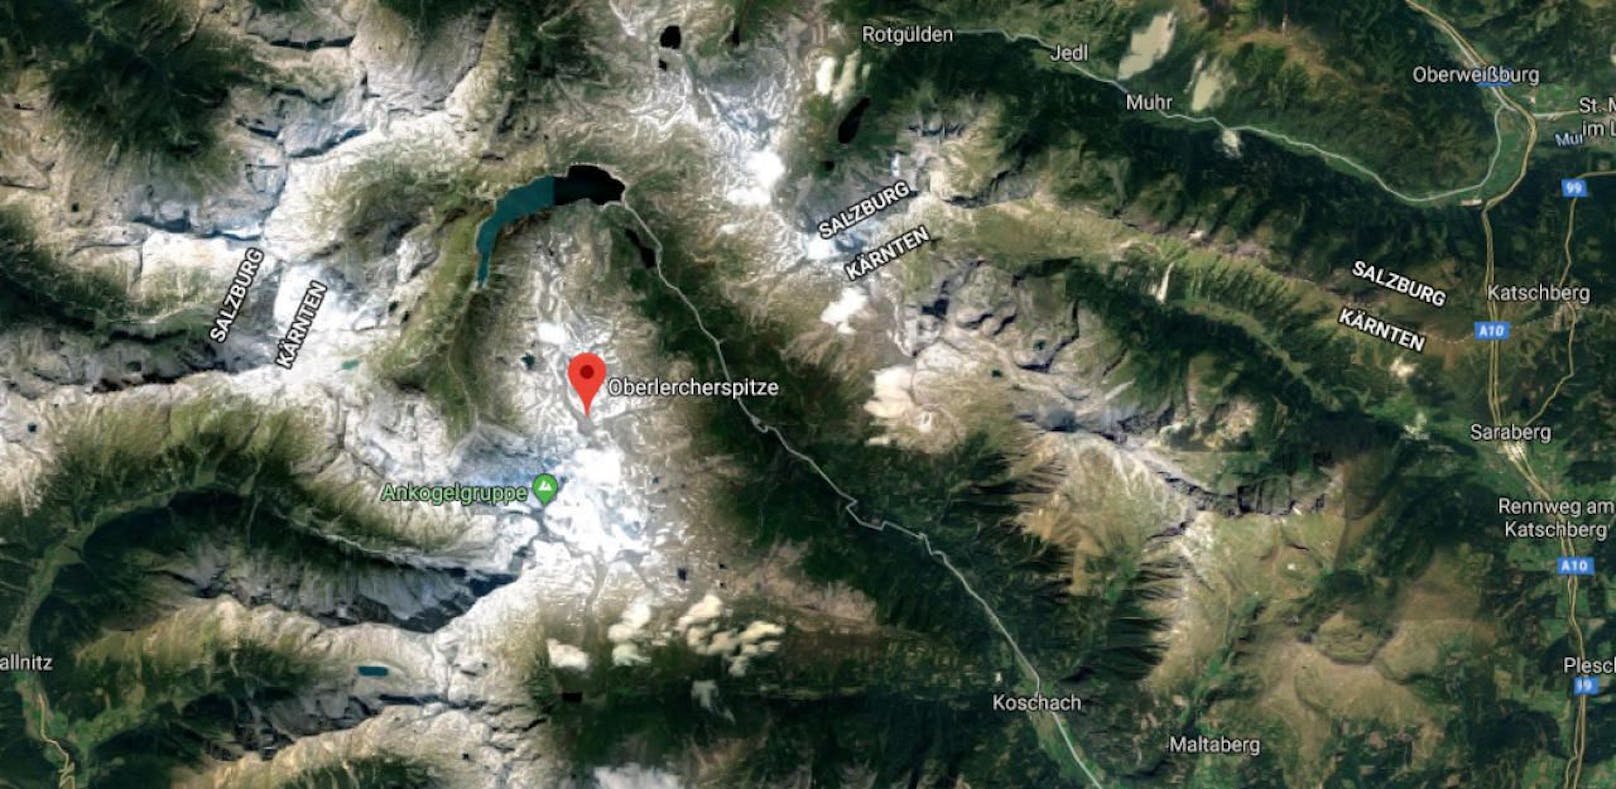 Bei einem Alpinunfall im Bezirk Spittal/ Drau kam am 17.05. 2019 ein 59-jähriger Alpinist ums Leben.